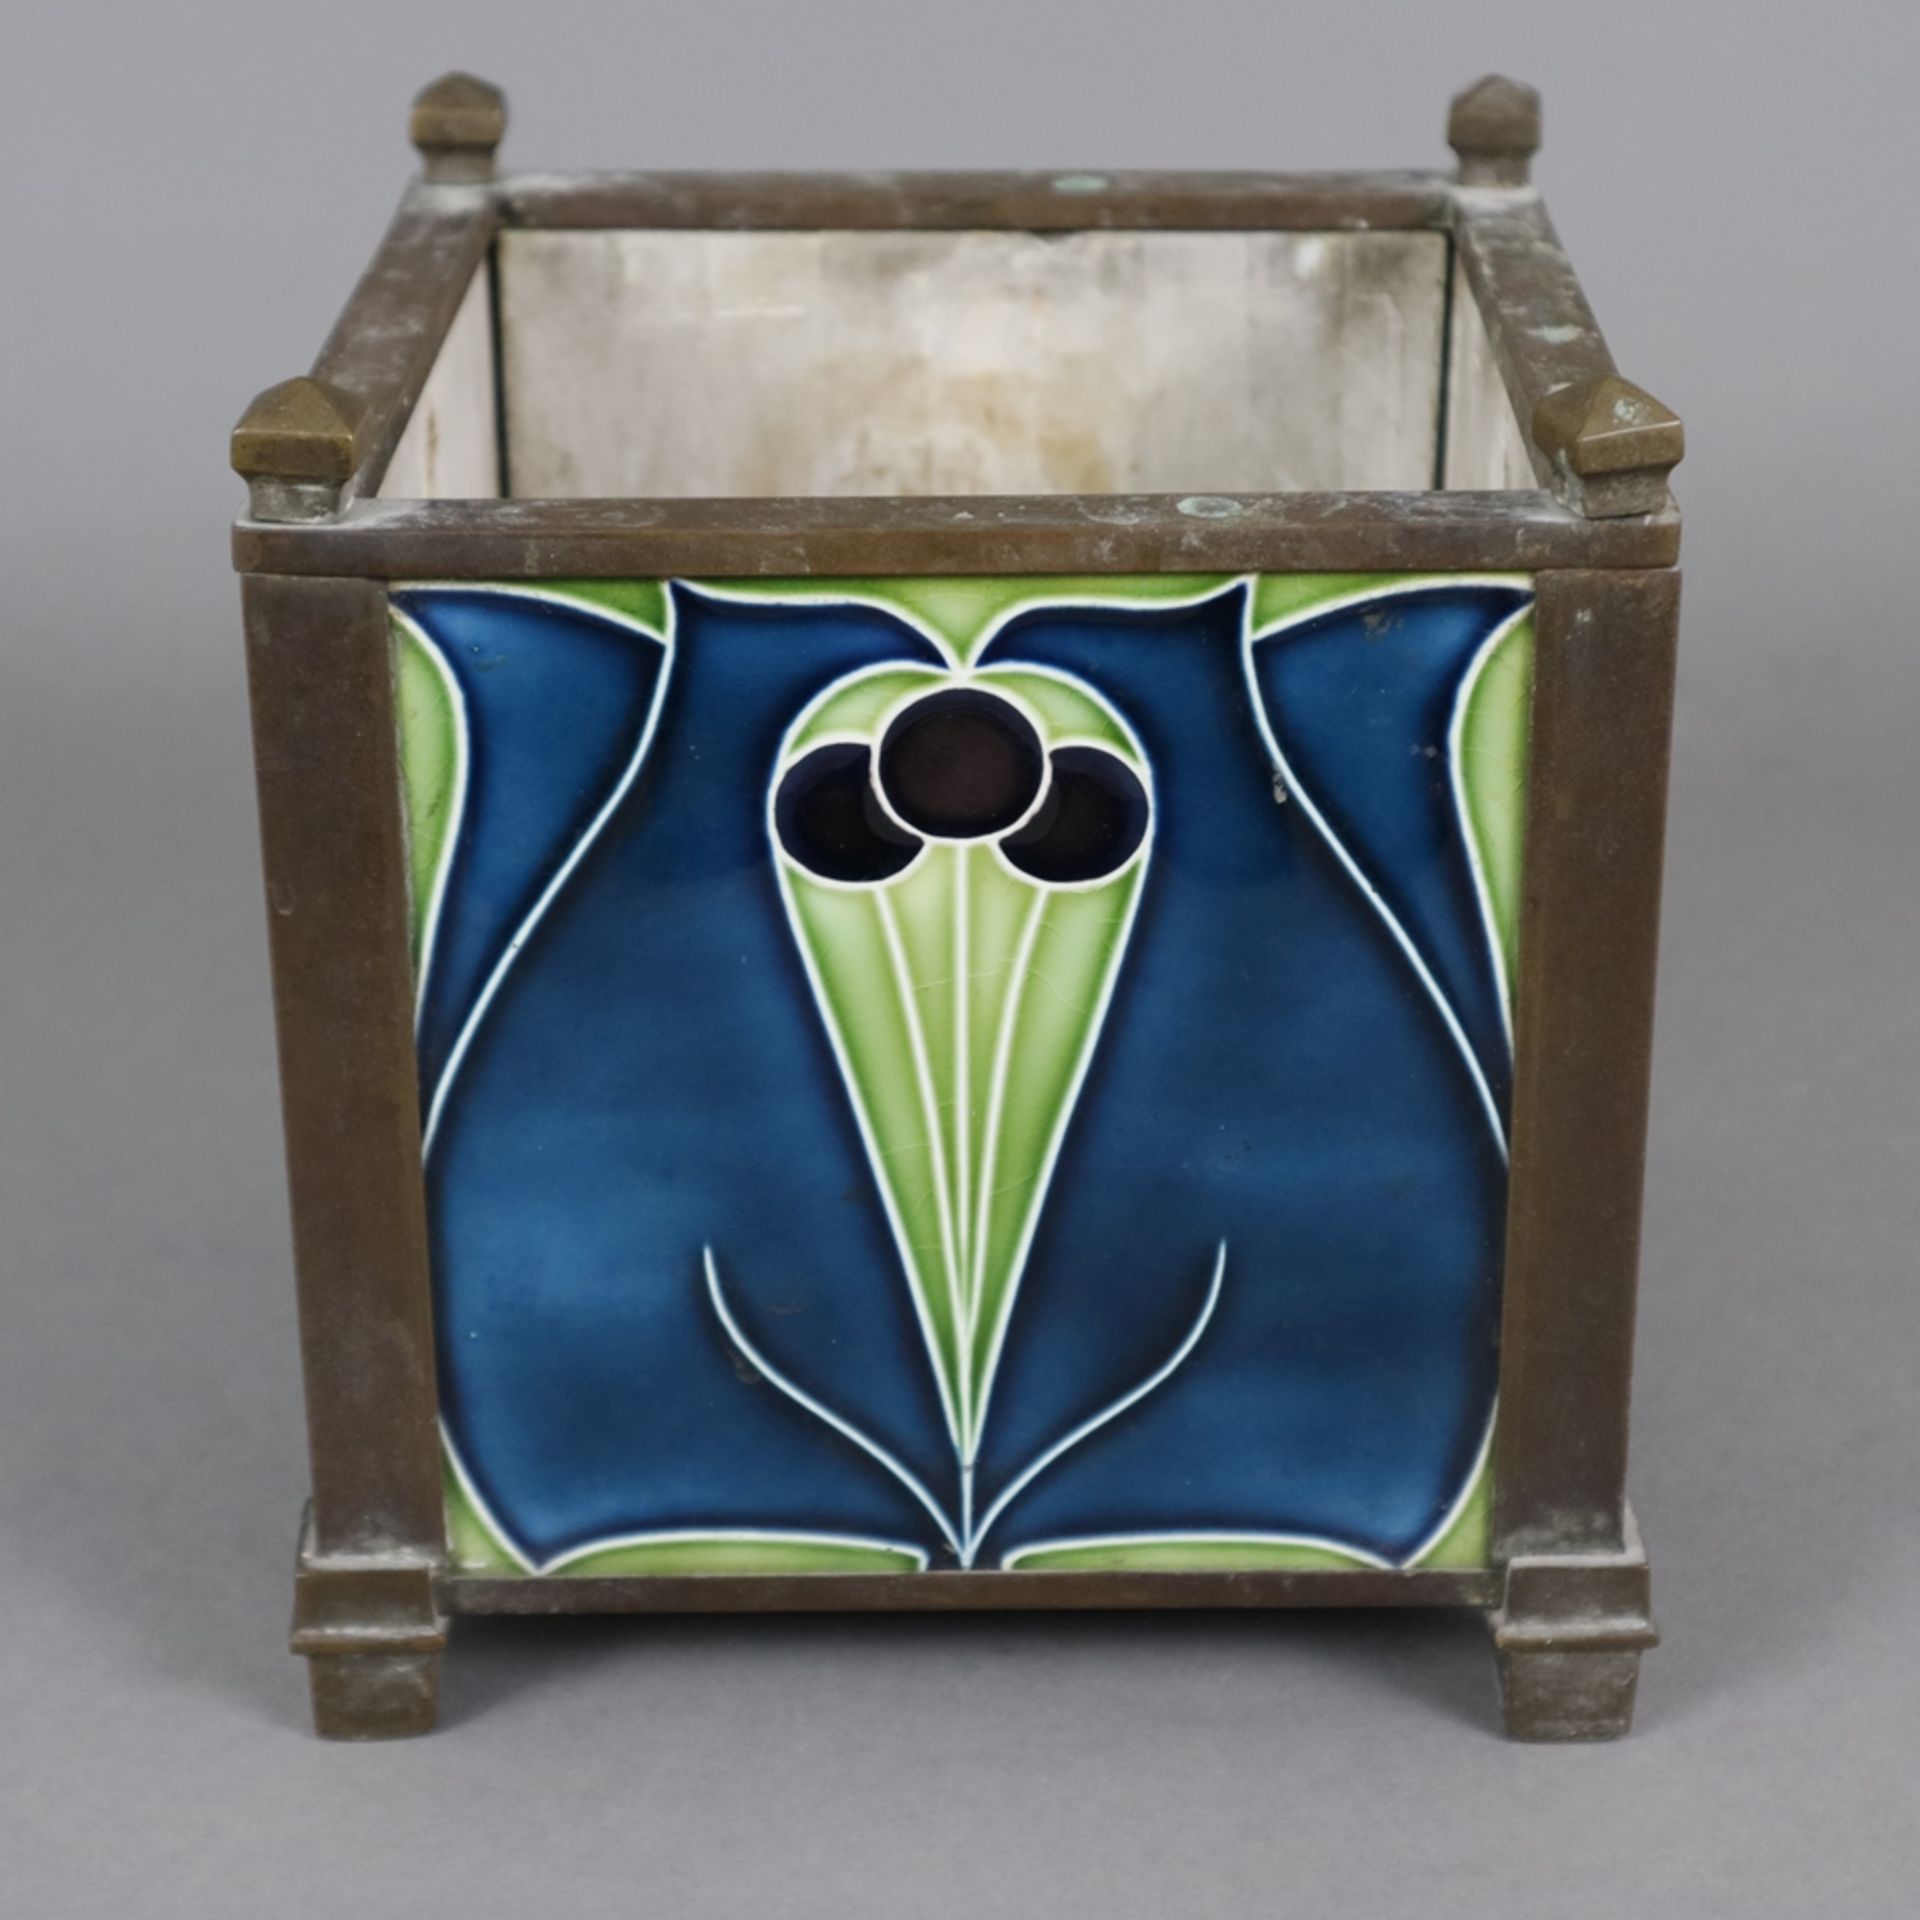 Jugendstil-Cachepot - um 1900/1920, viereckiges Metallgestell mit floral bemalten Keramikkacheln, l